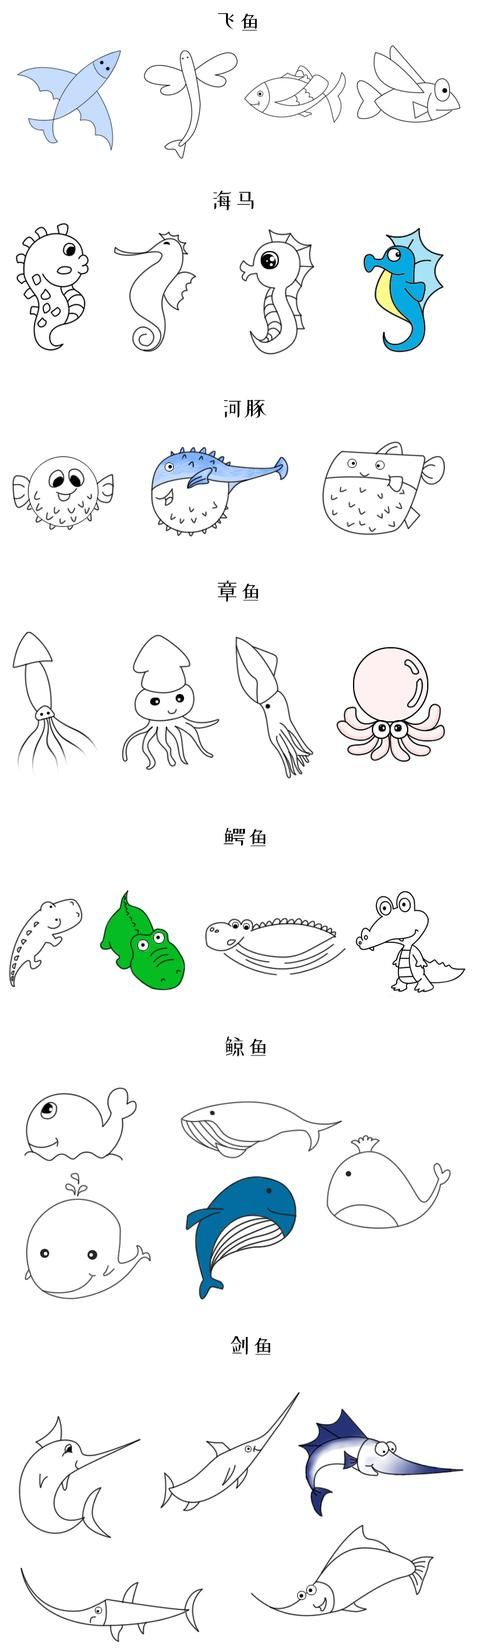 各种海洋生物及仙人掌简笔画集合图片大全(各种各样的仙人掌简笔画)